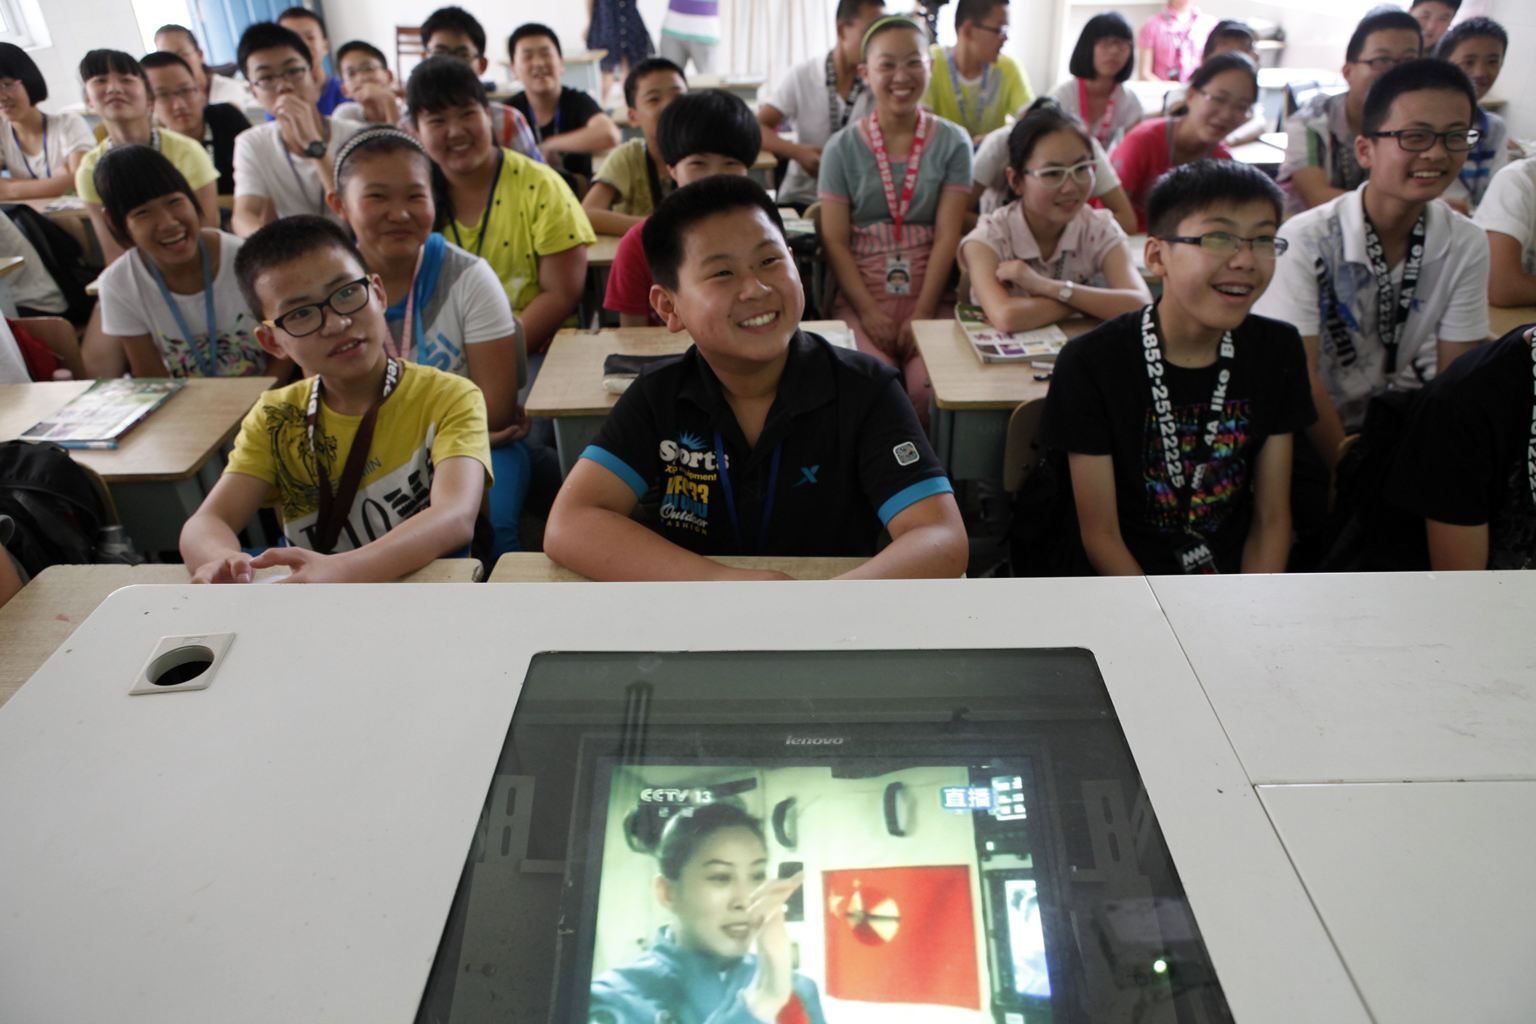 Китайская астронавтка провела лекцию из космоса